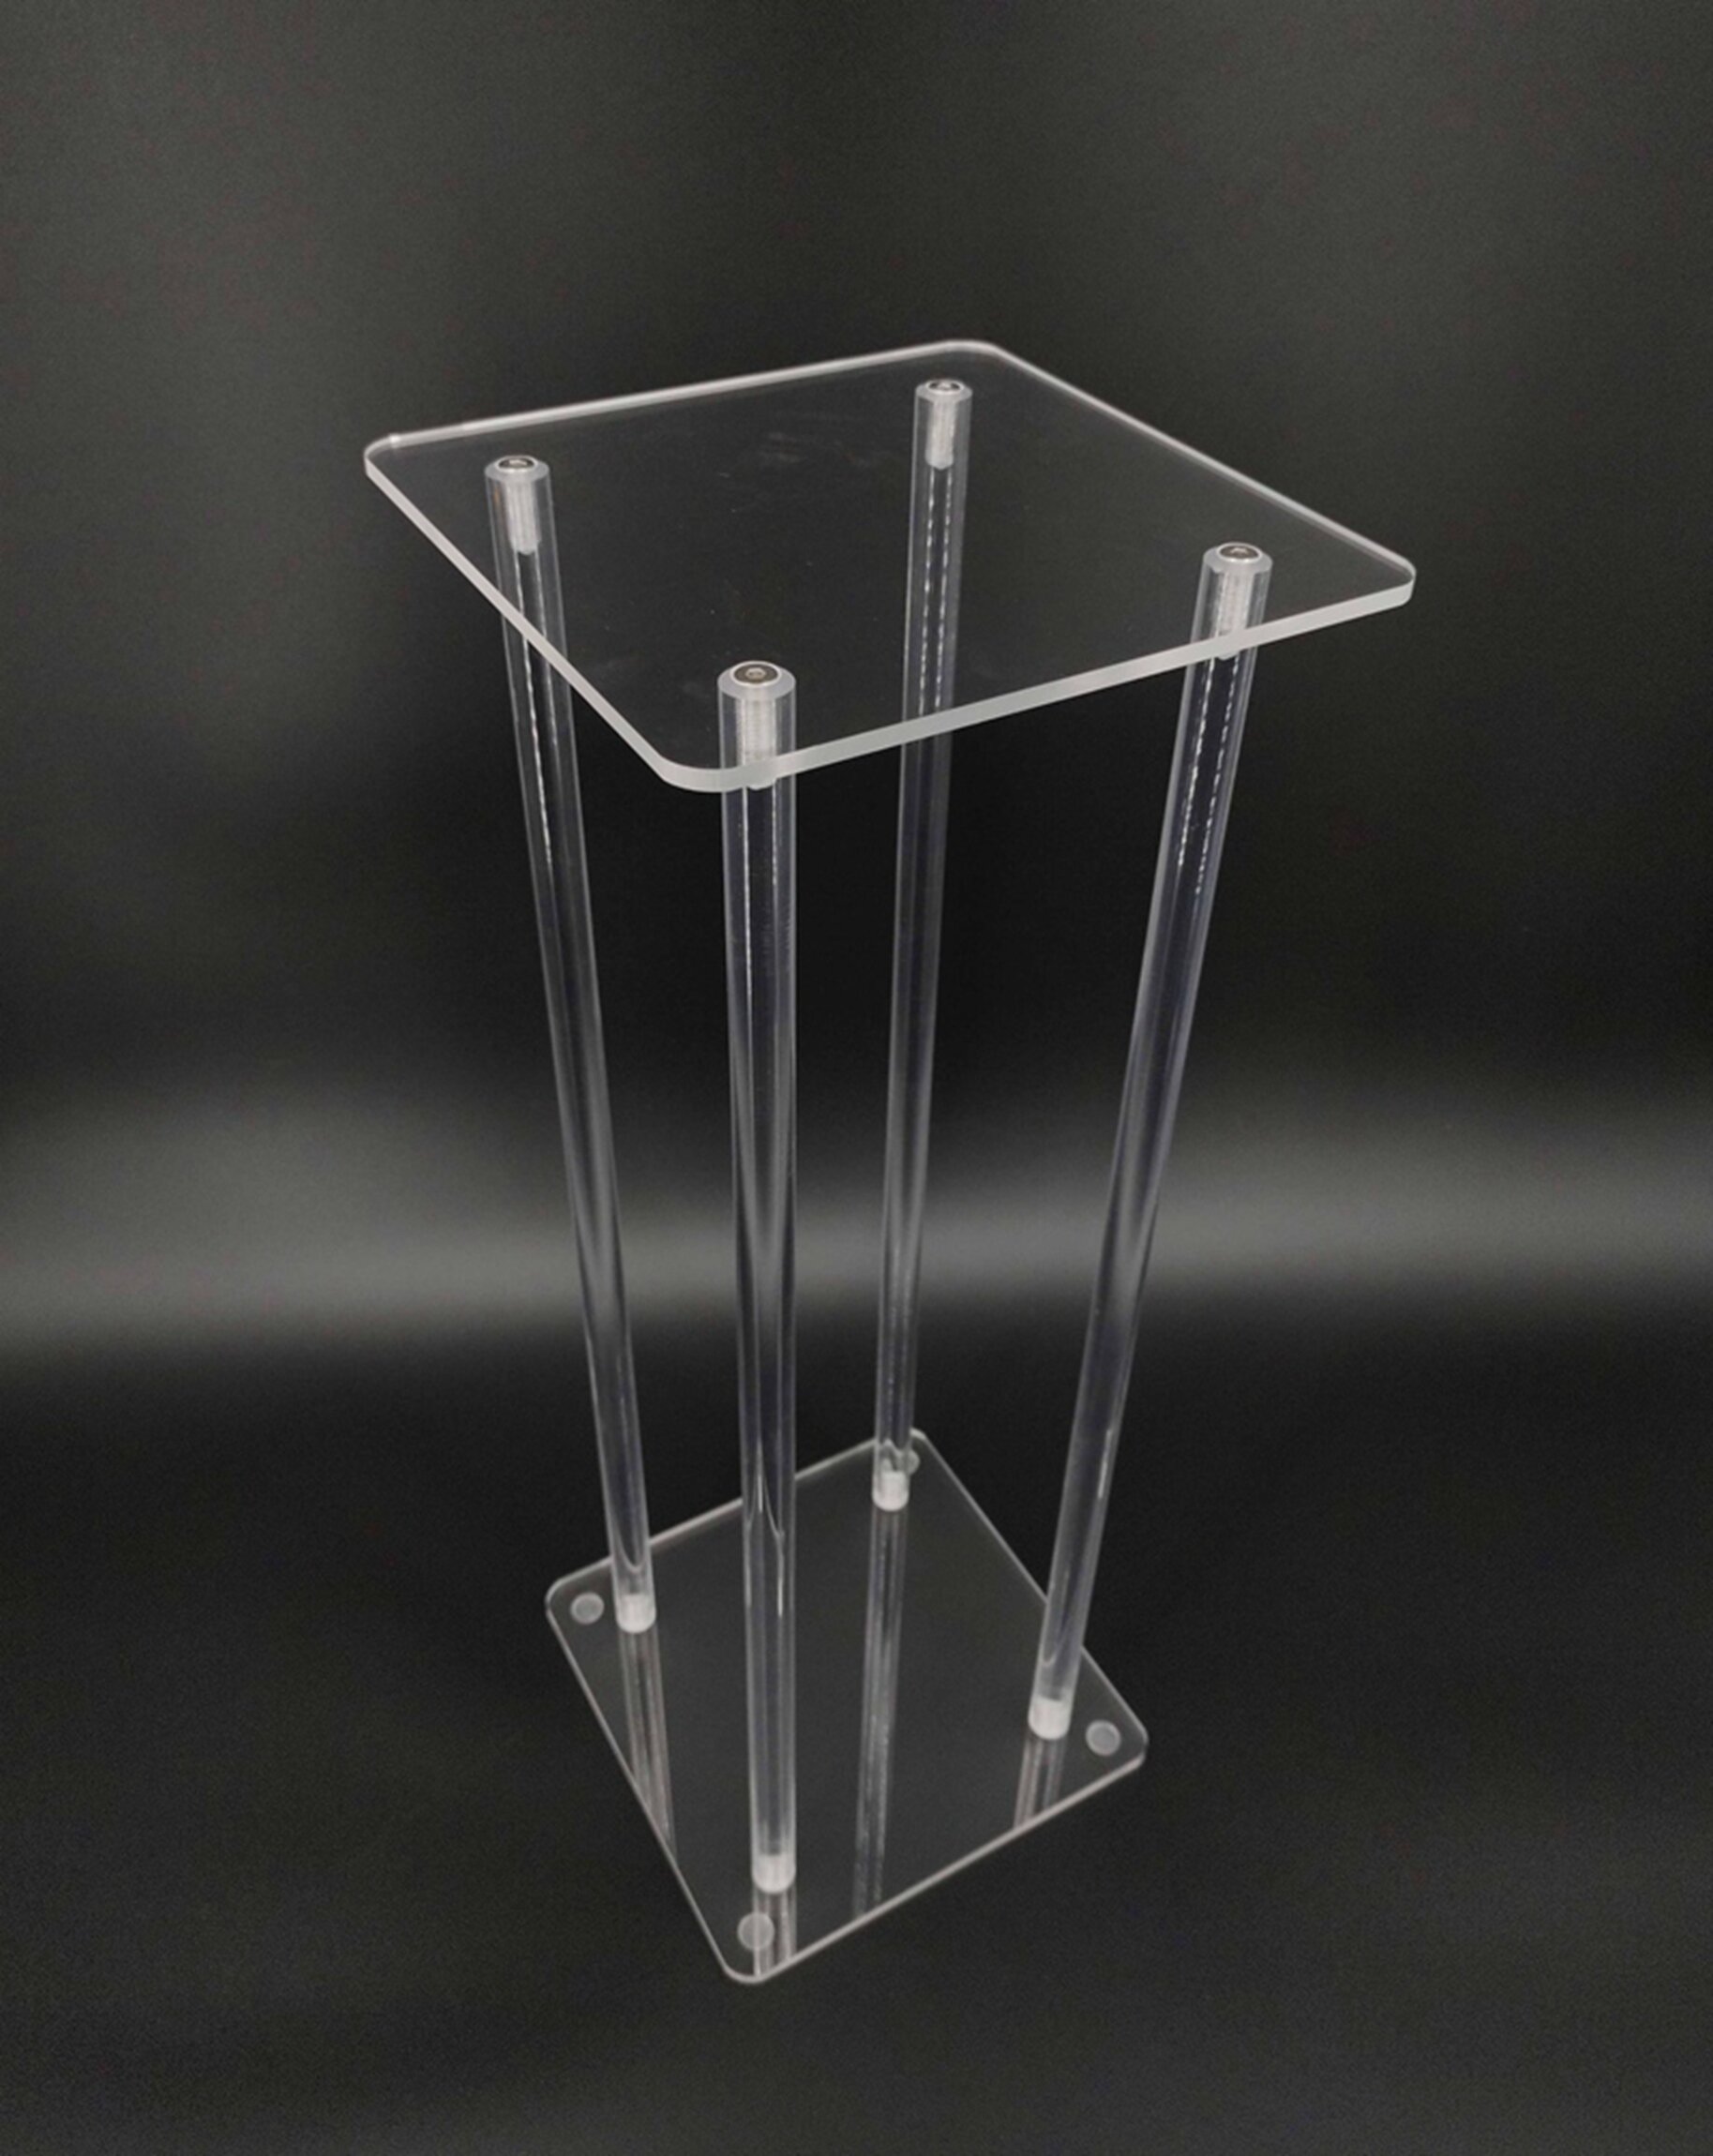 https://assets.wfcdn.com/im/64372226/compr-r85/1434/143491725/kammeron-tall-clear-acrylic-riser-transparent-plexiglass-pedestal-table-display-podium-glorifier-riser-stand.jpg